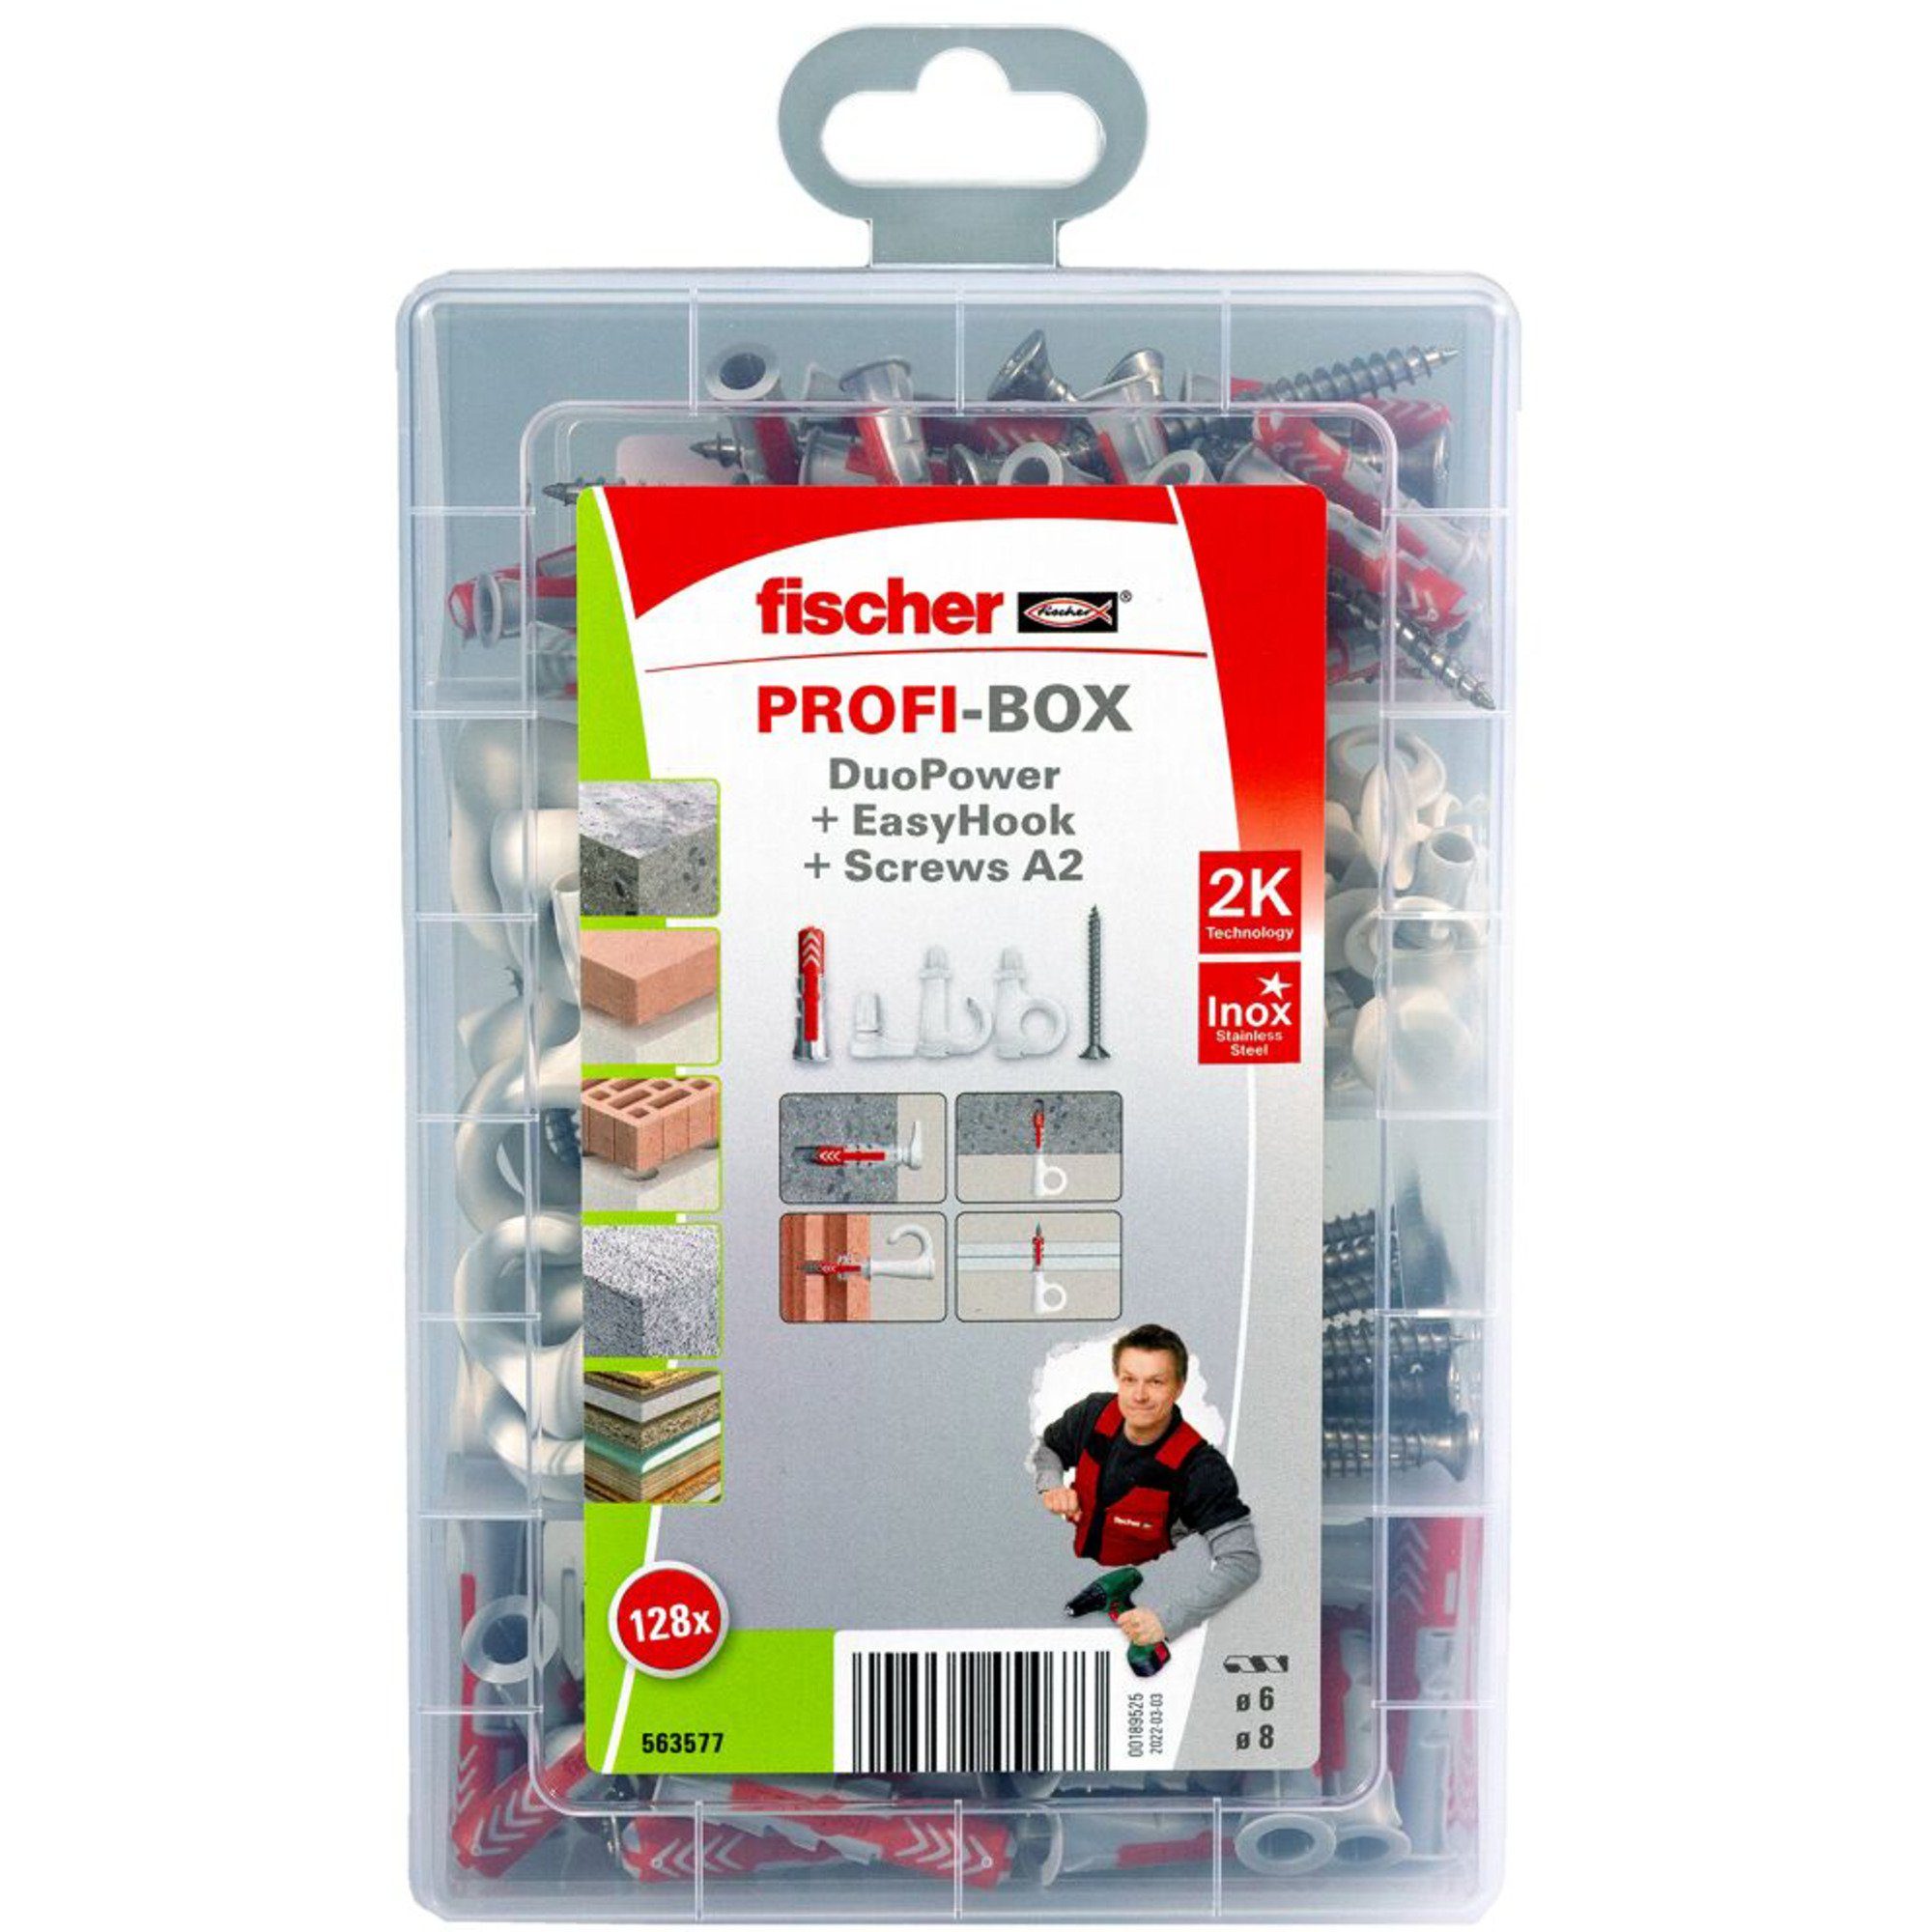 EasyHook DuoPower + fischer + ProfiBox Universaldübel Schraube Fischer